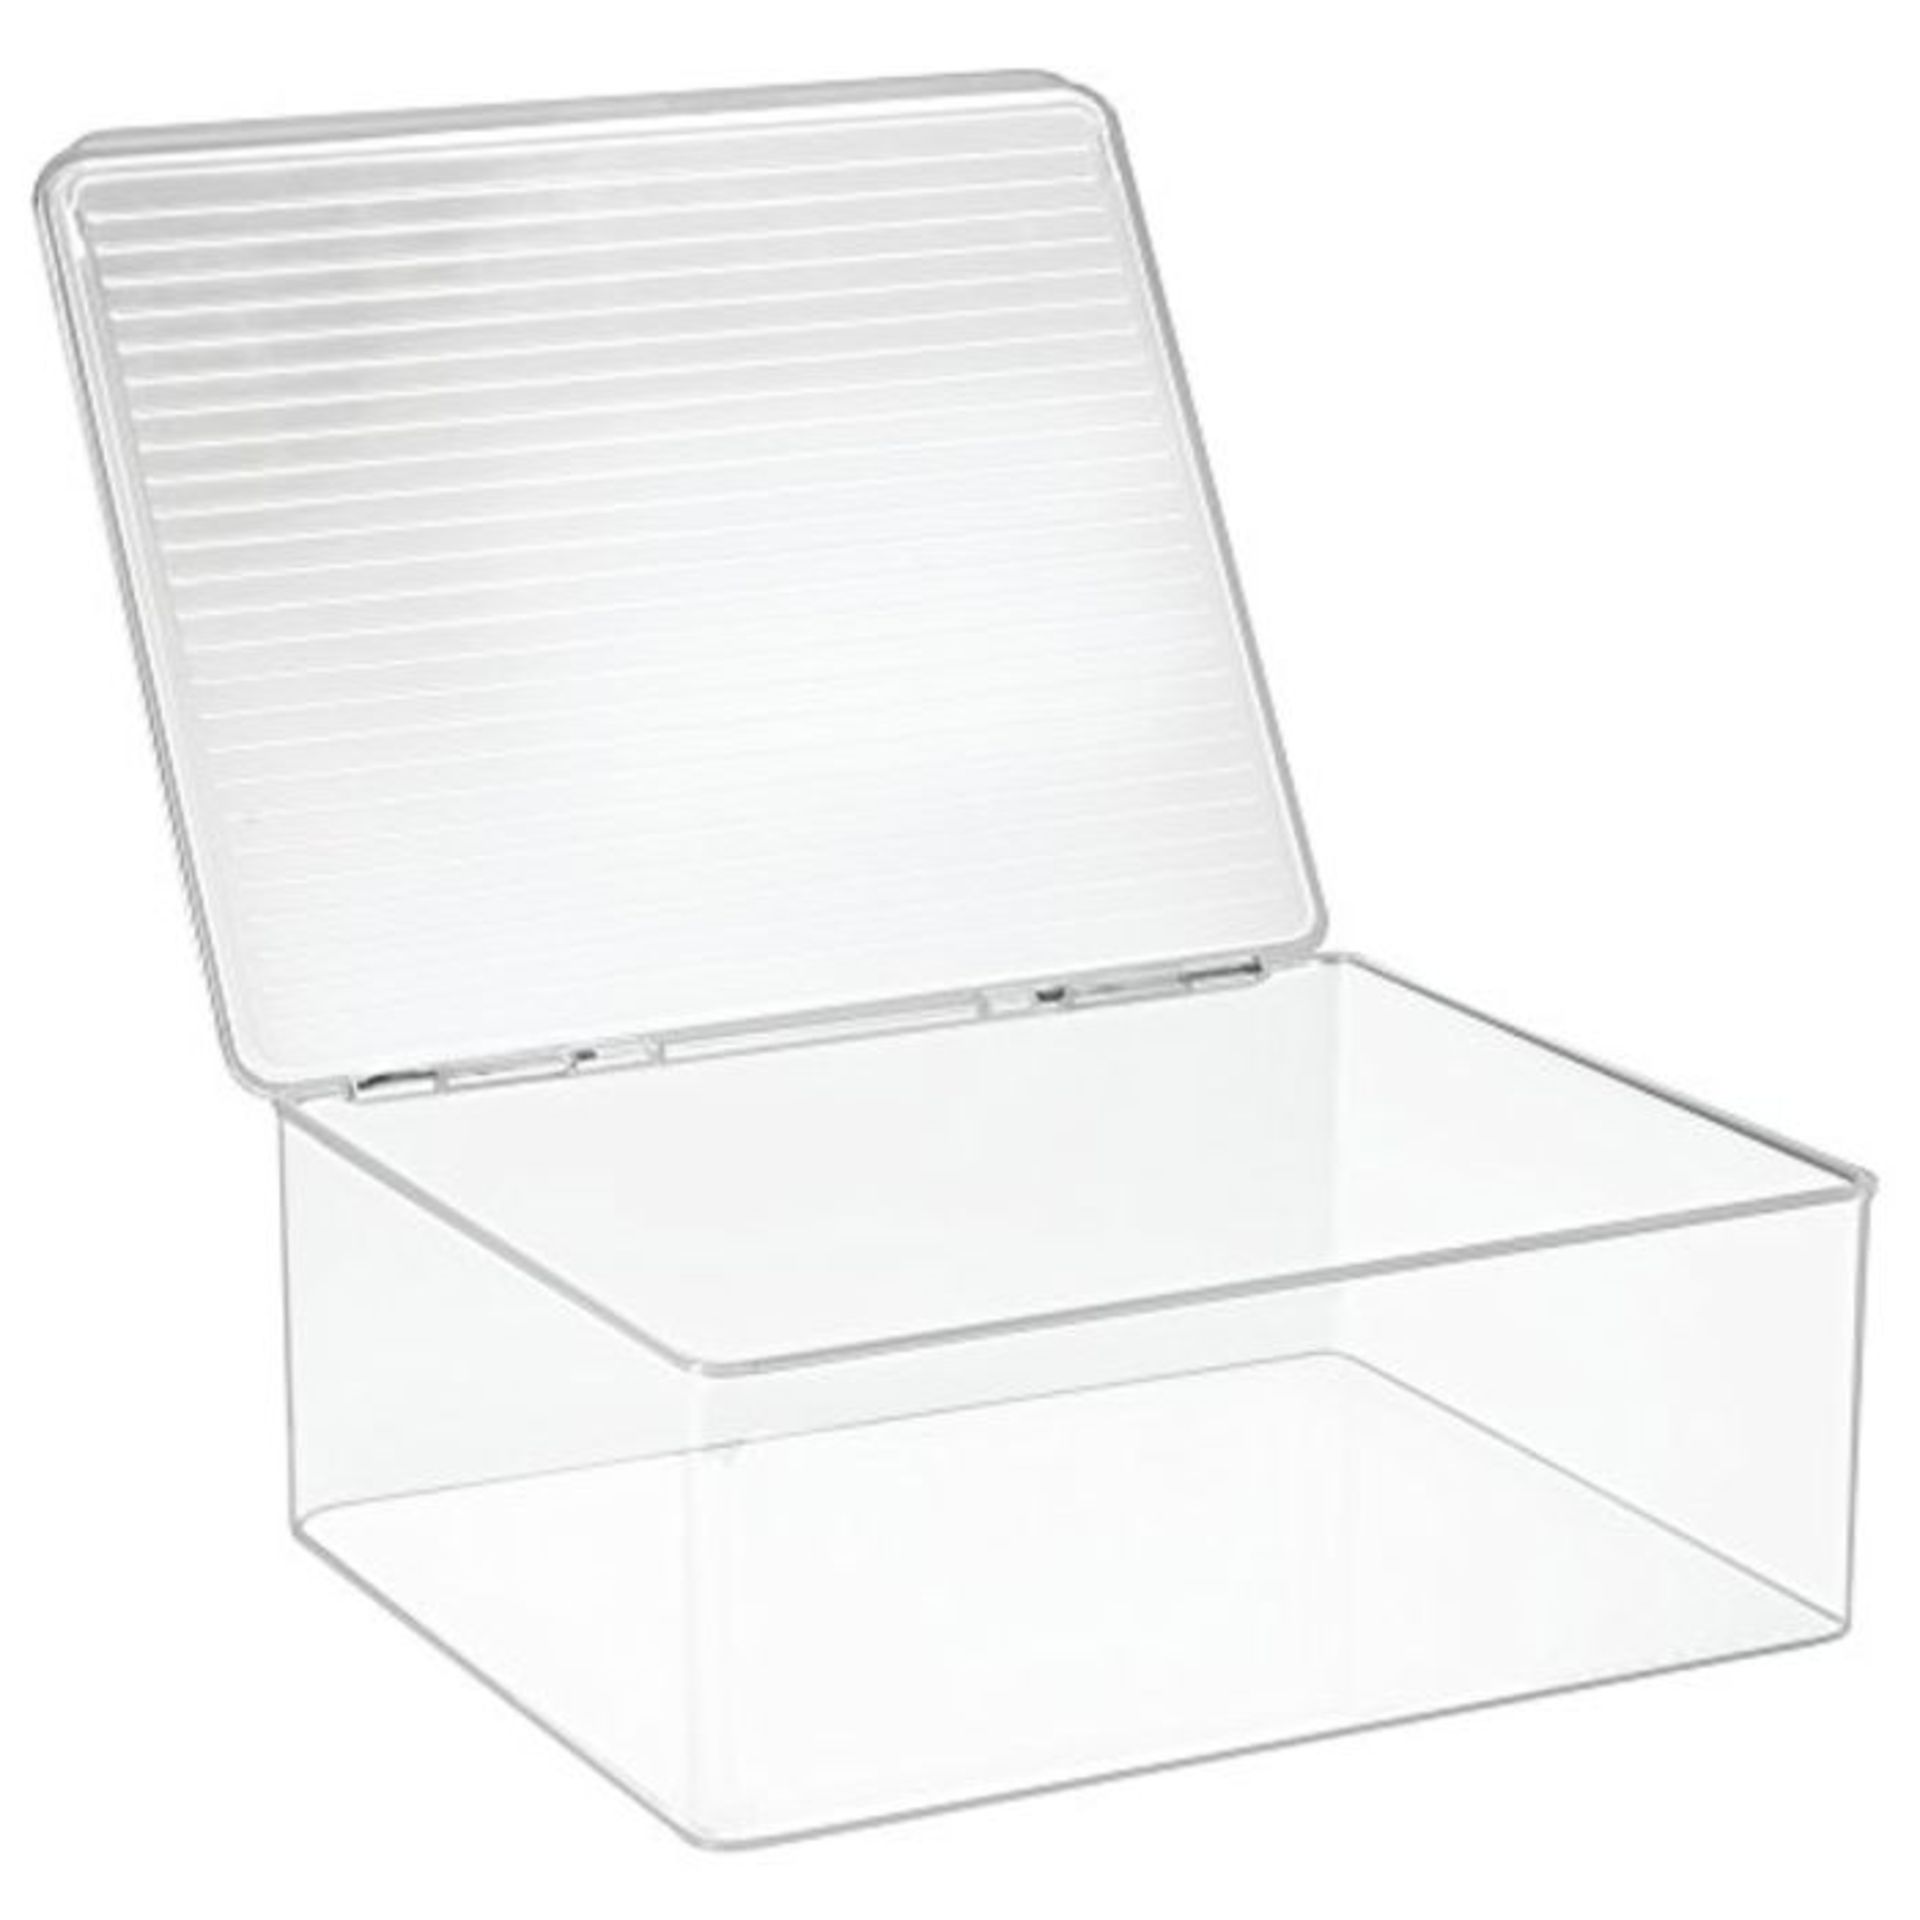 InterDesign 29 x 34 x 12 cm Kitchen Binz Stackable Box, Clear